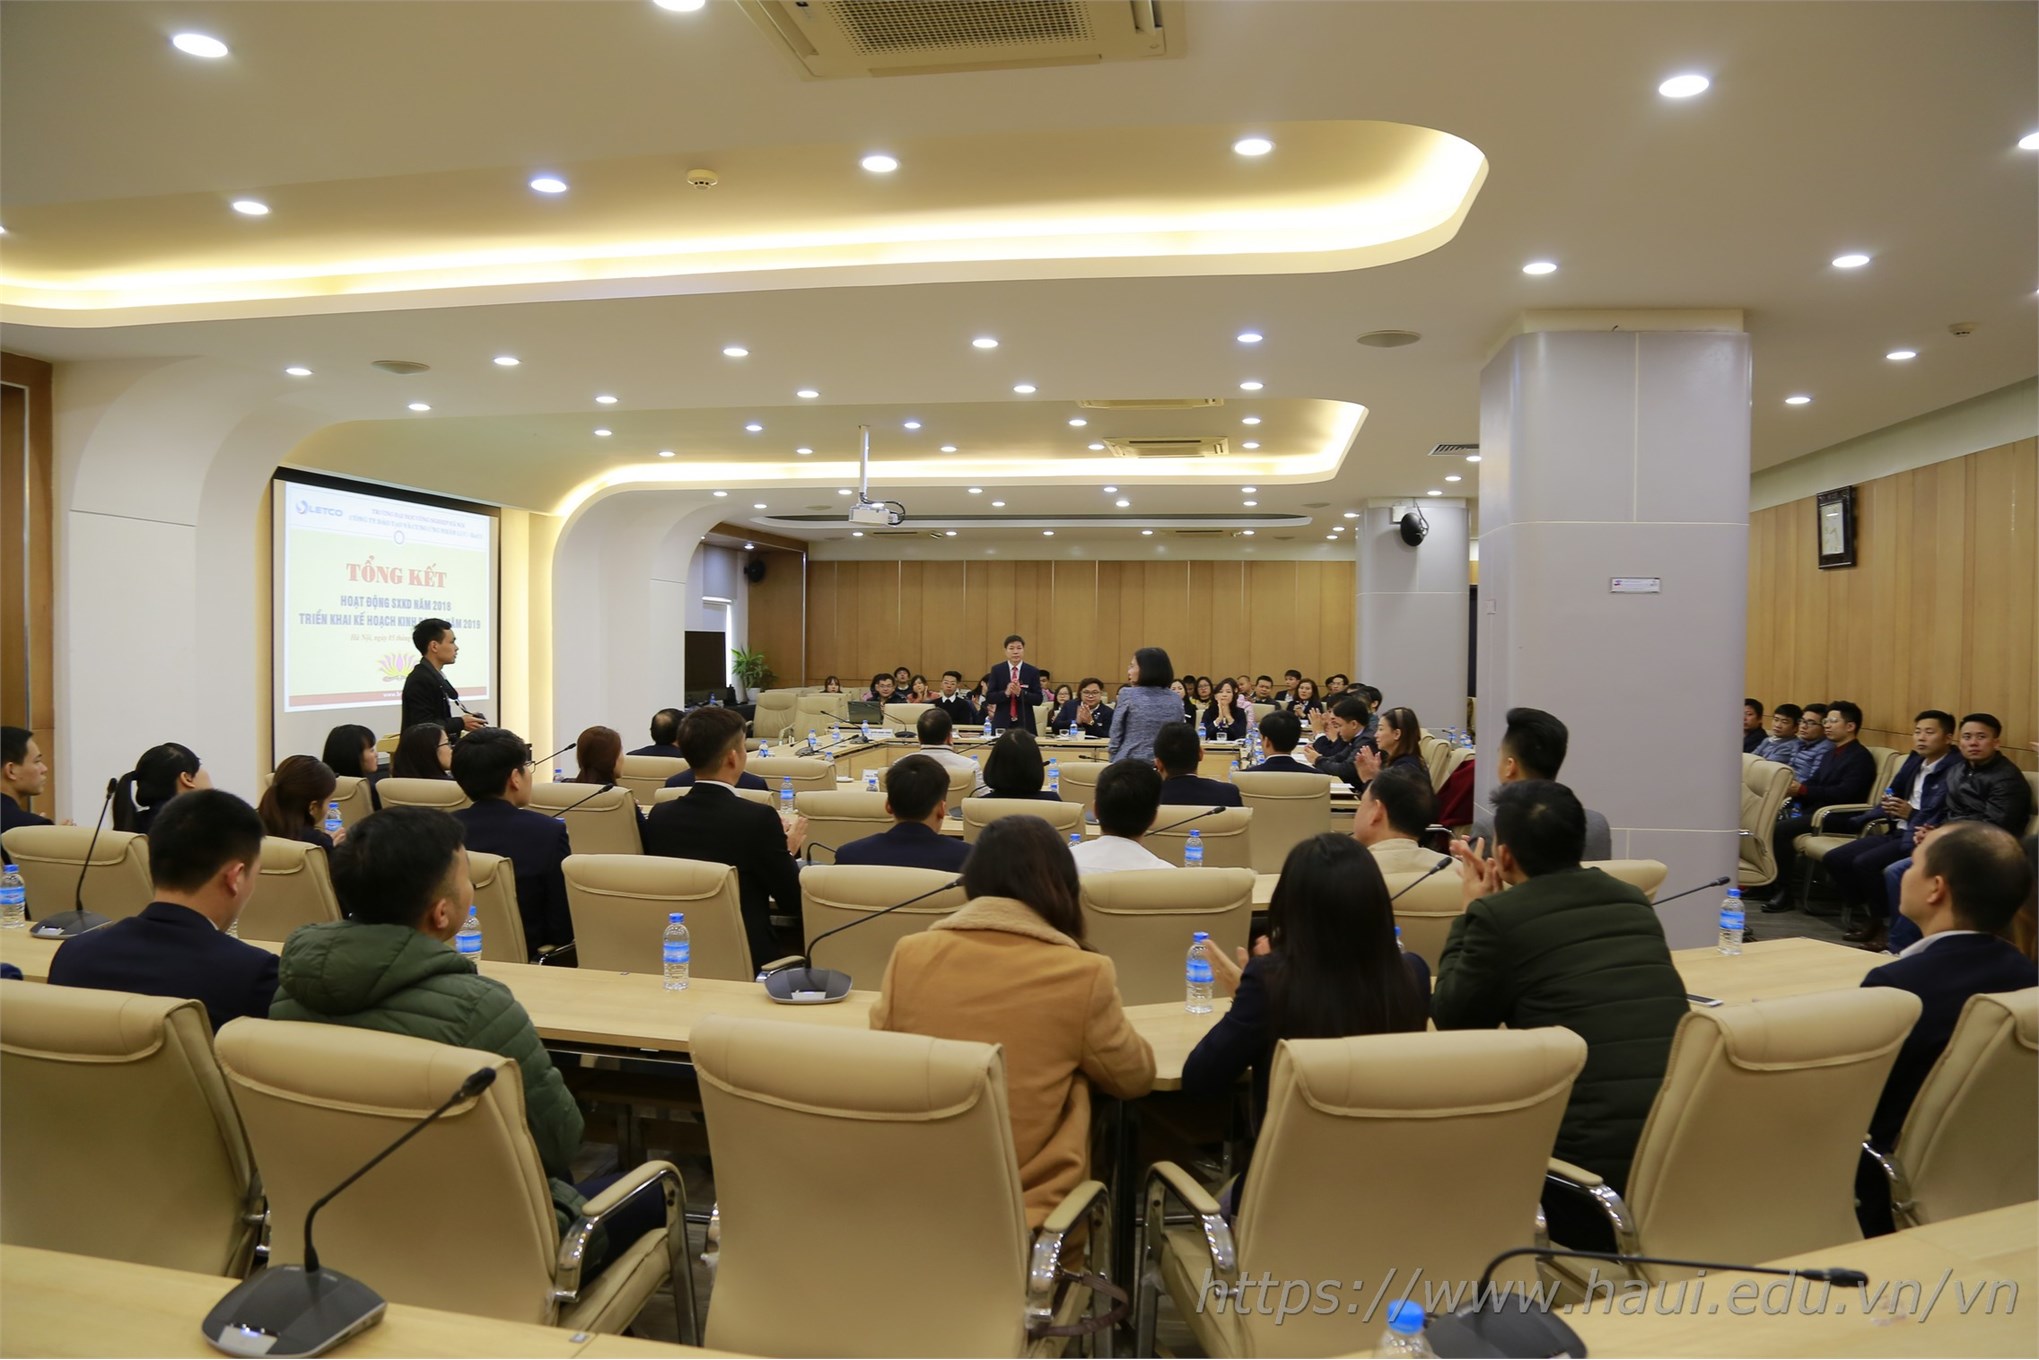 Hội nghị Tổng kết hoạt động sản xuất kinh doanh Công ty Letco năm 2018